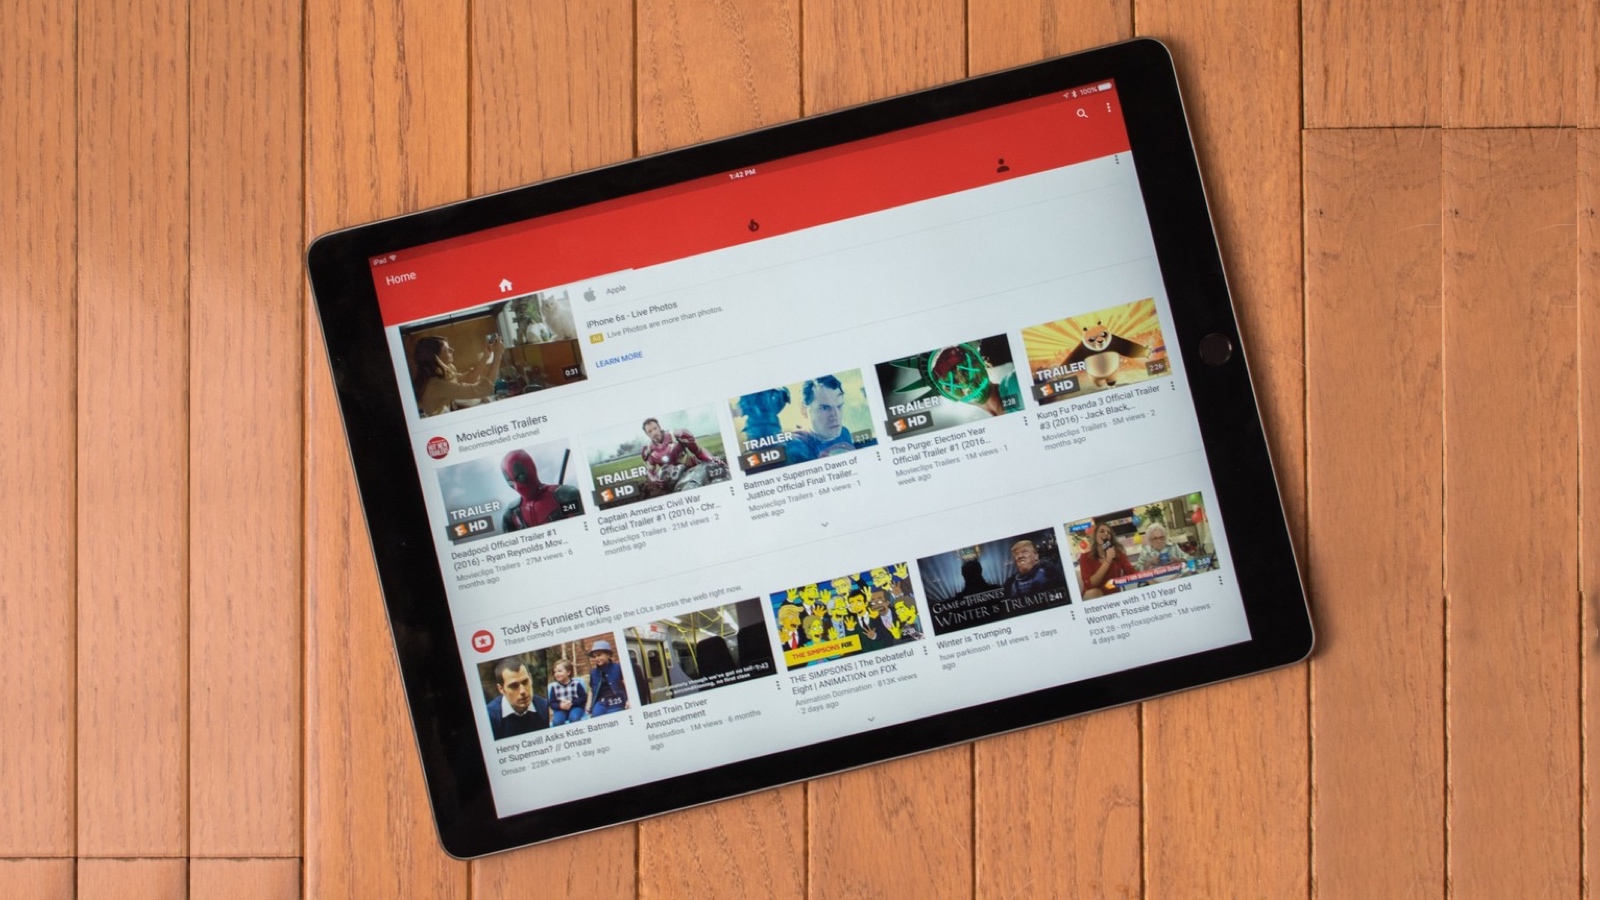 iOS-приложение YouTube теперь полностью поддерживает iPad Pro